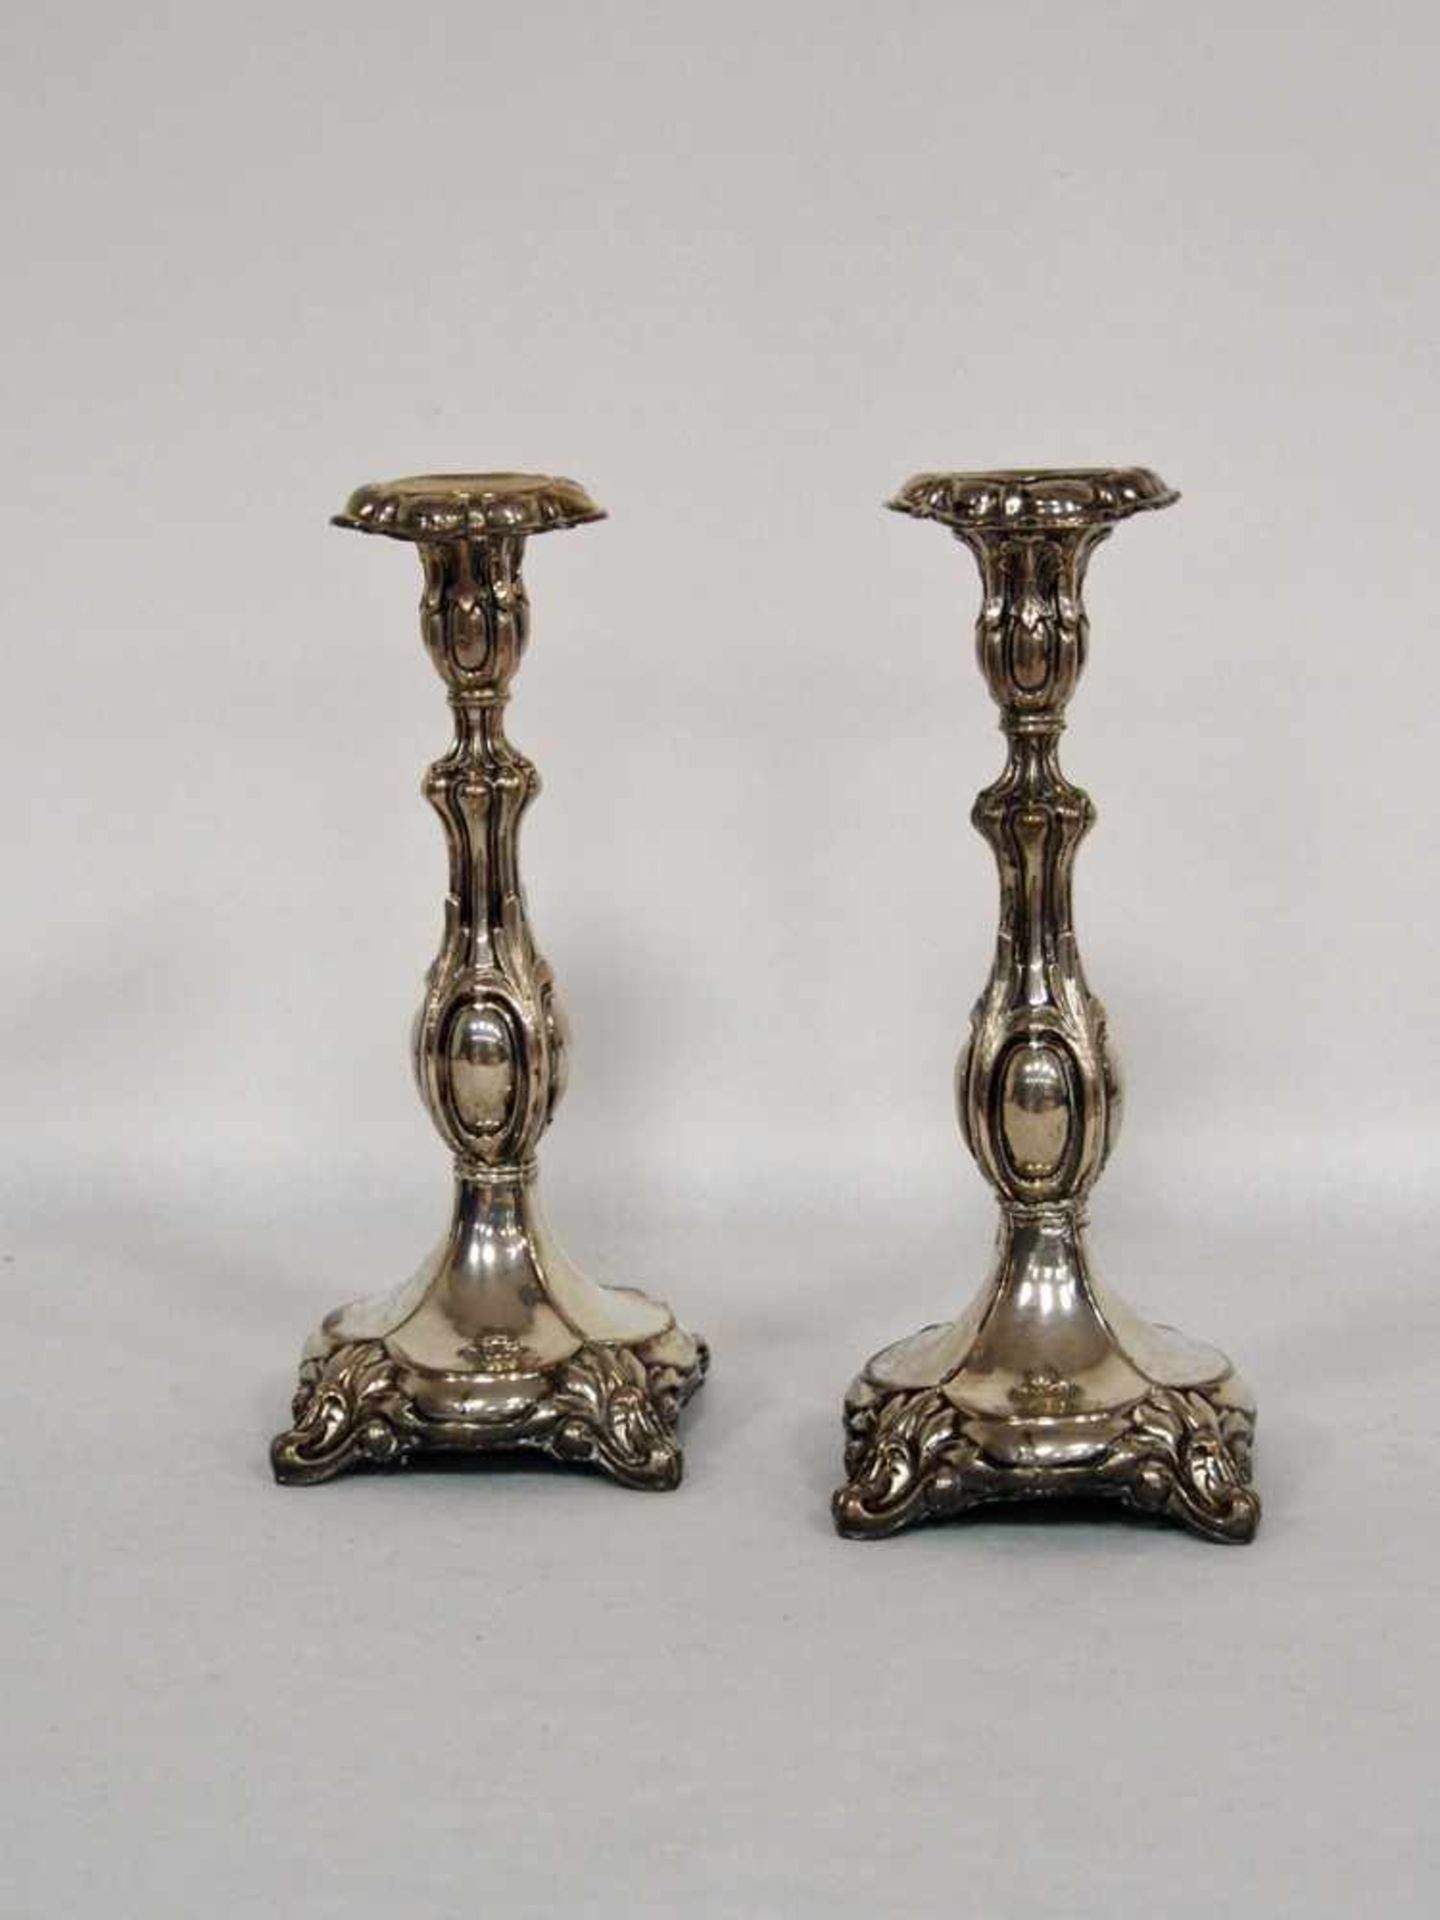 Paar KerzenleuchterSilber, deutsch 19. Jahrhundert (gefüllt), Höhe 27 cm (alte Reparaturen)